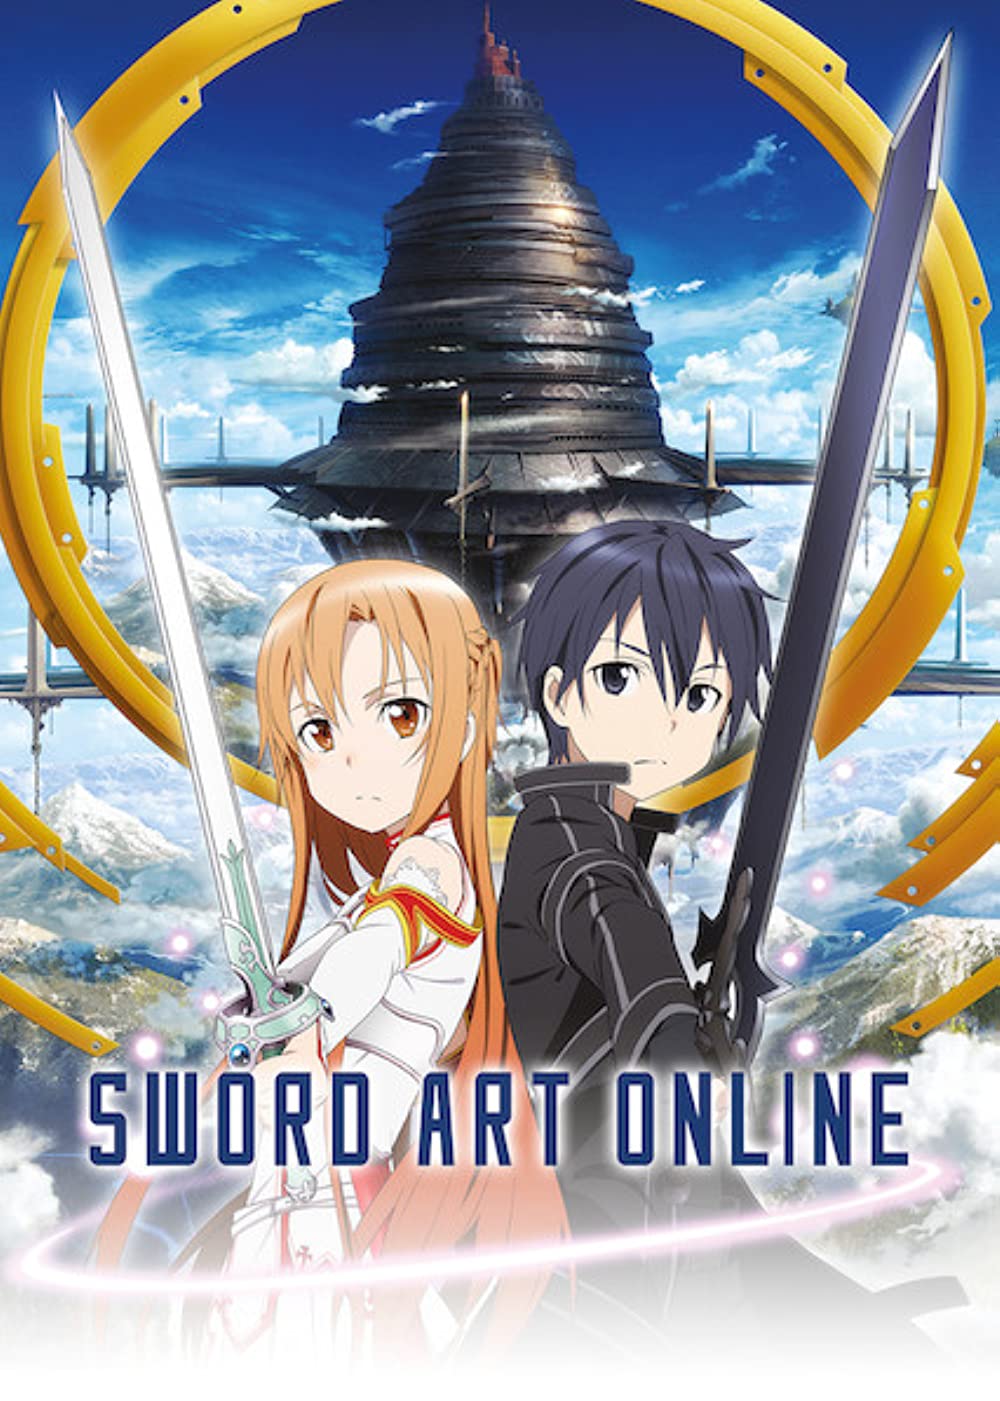 Sky Video Games Anime Sword Art Online Matte Finish Poster